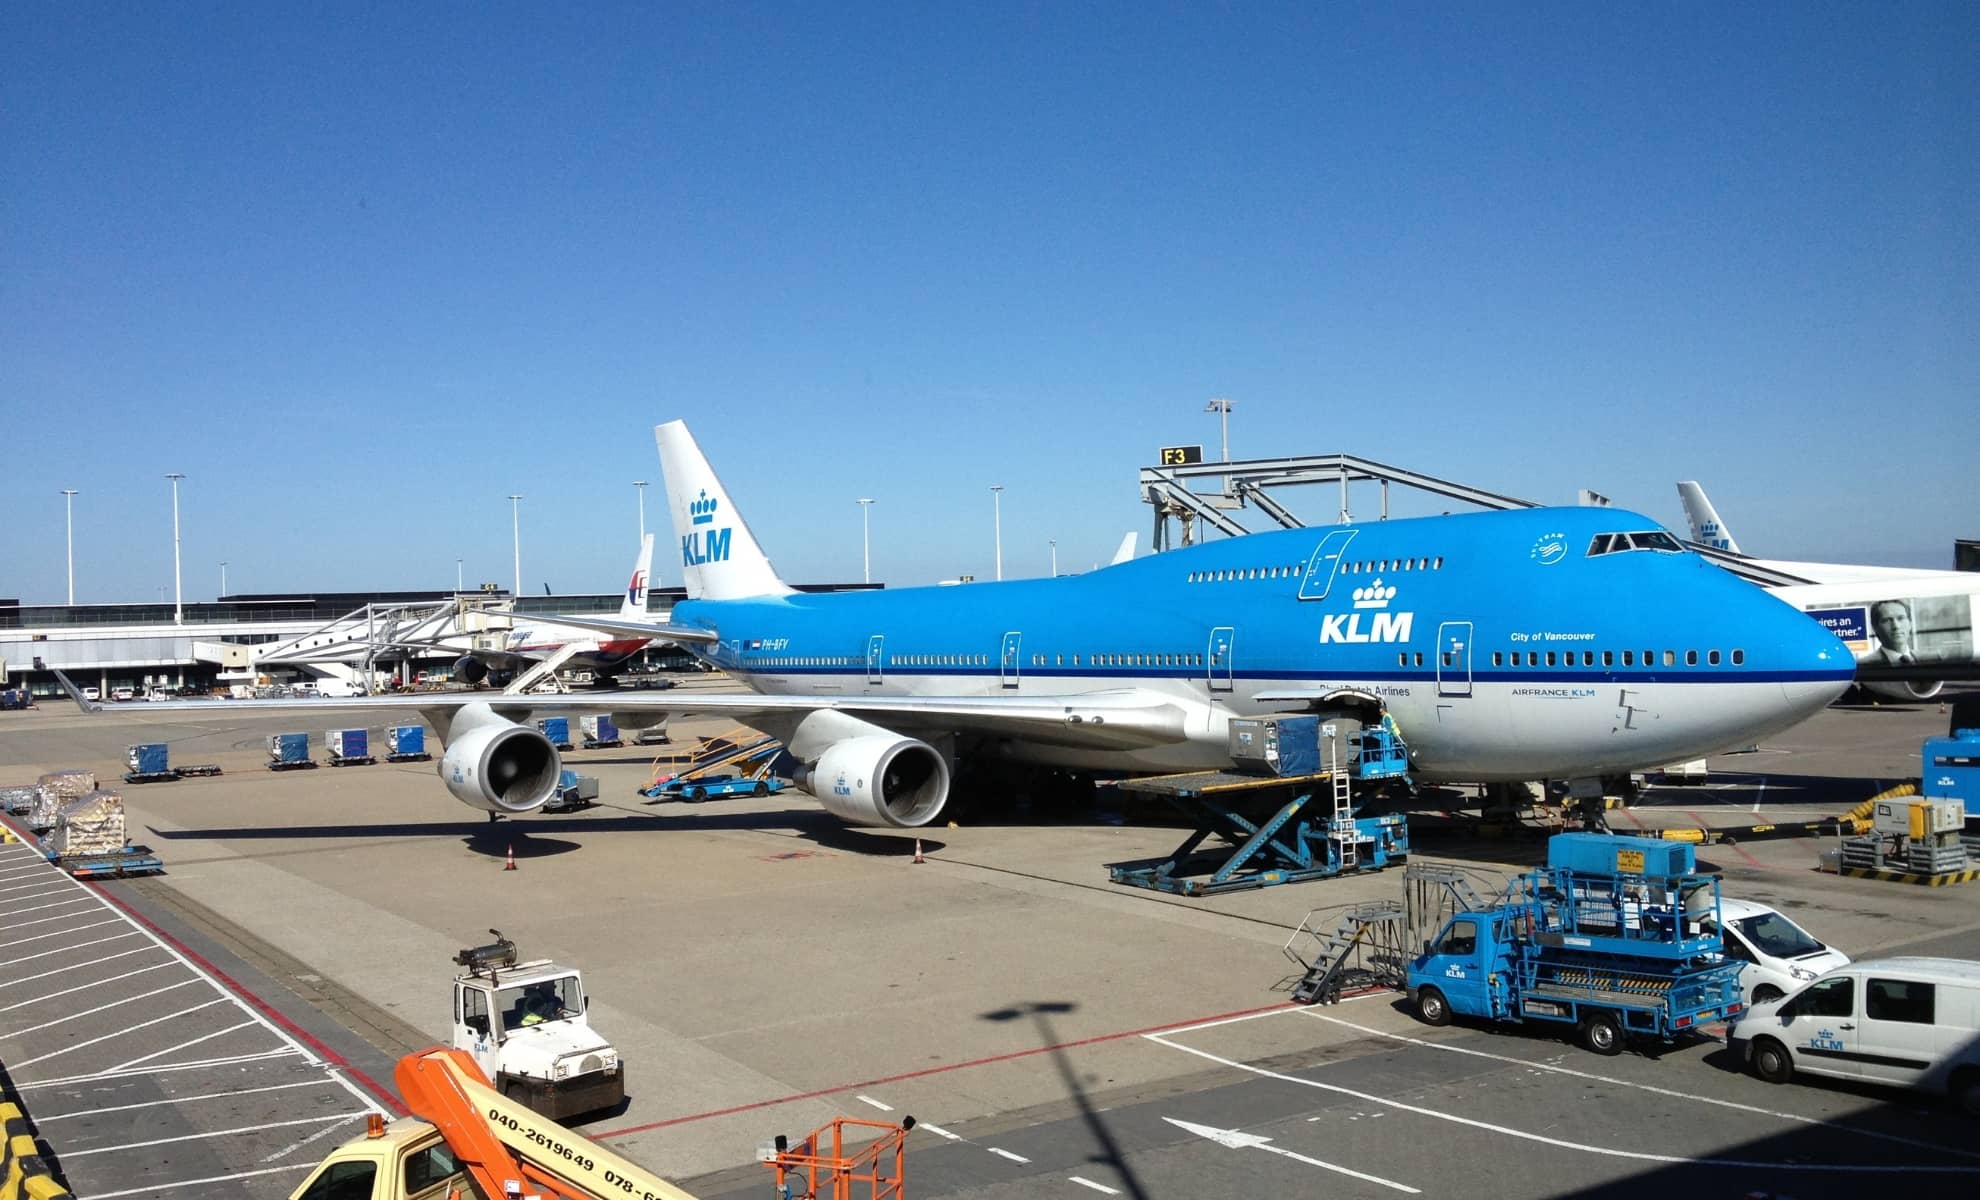 Avion de la compagnie aérienne KLM